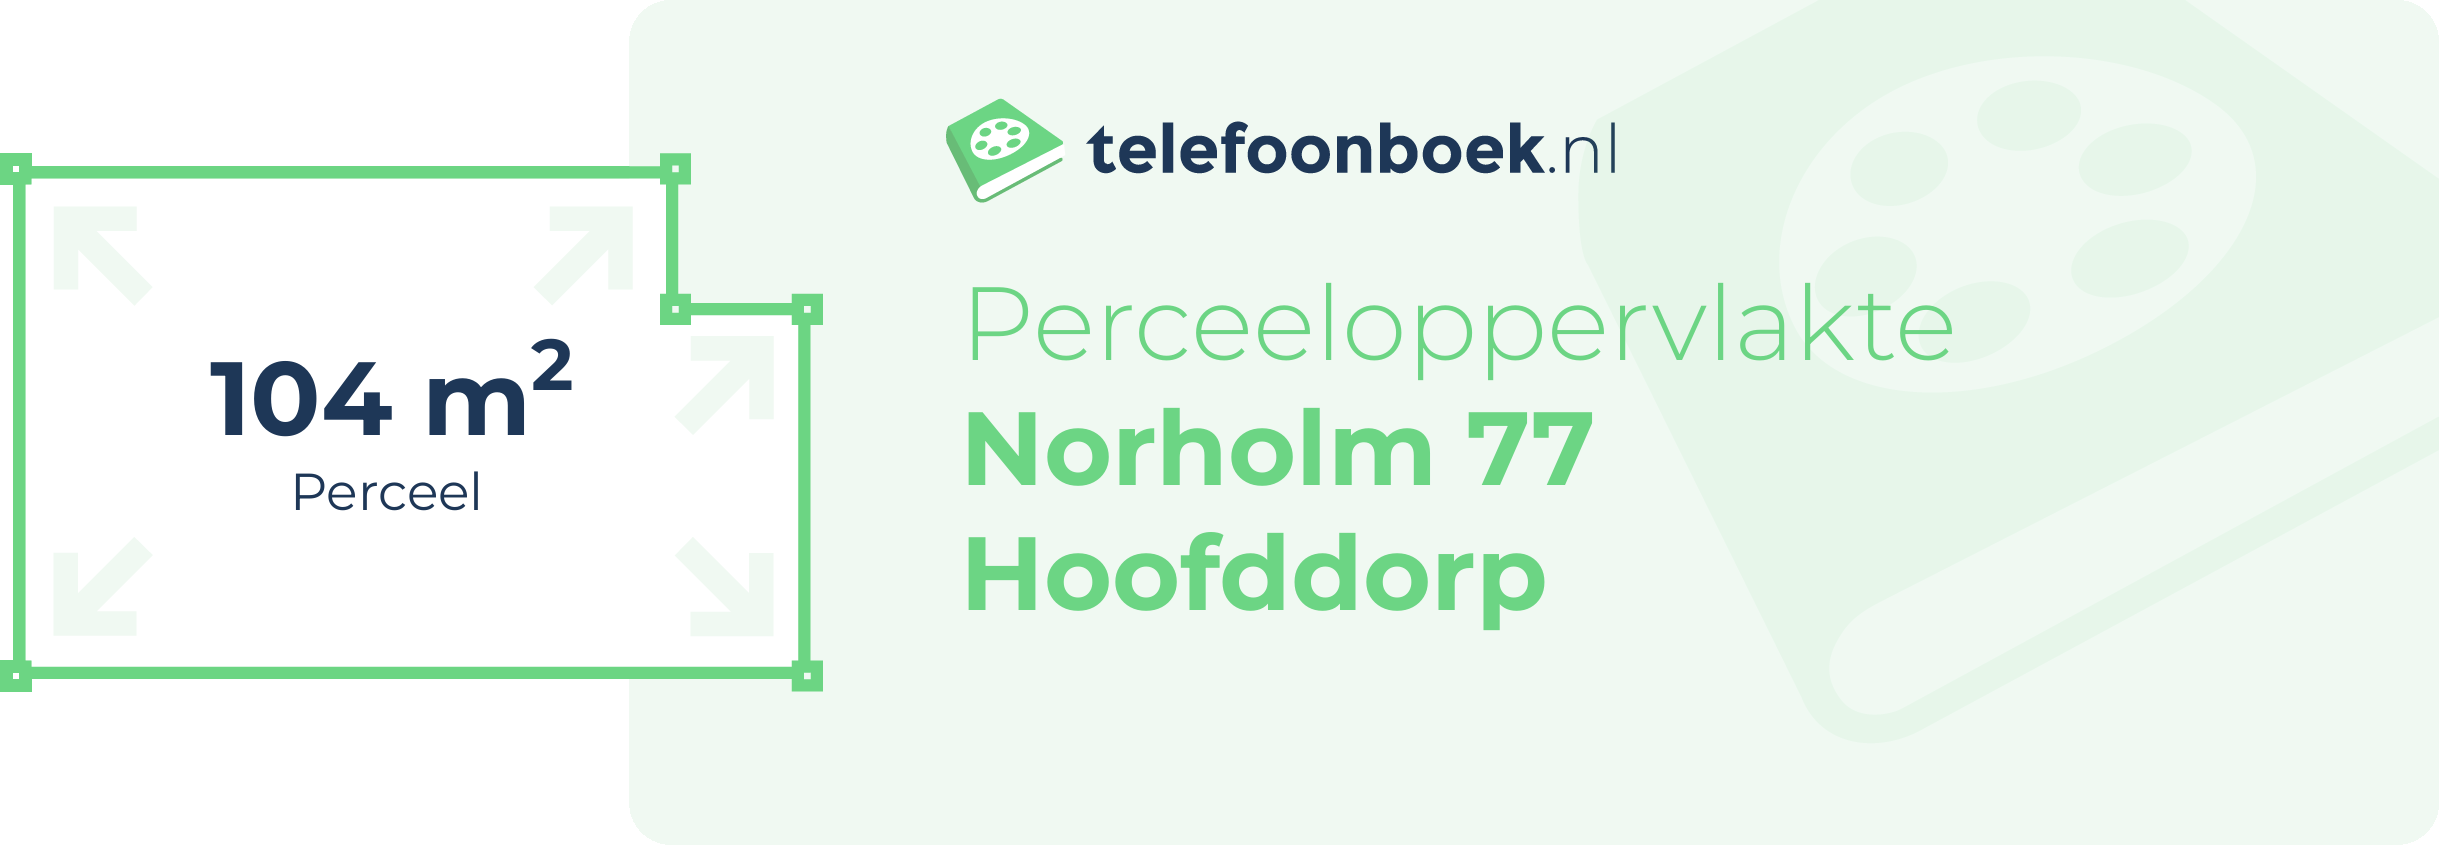 Perceeloppervlakte Norholm 77 Hoofddorp